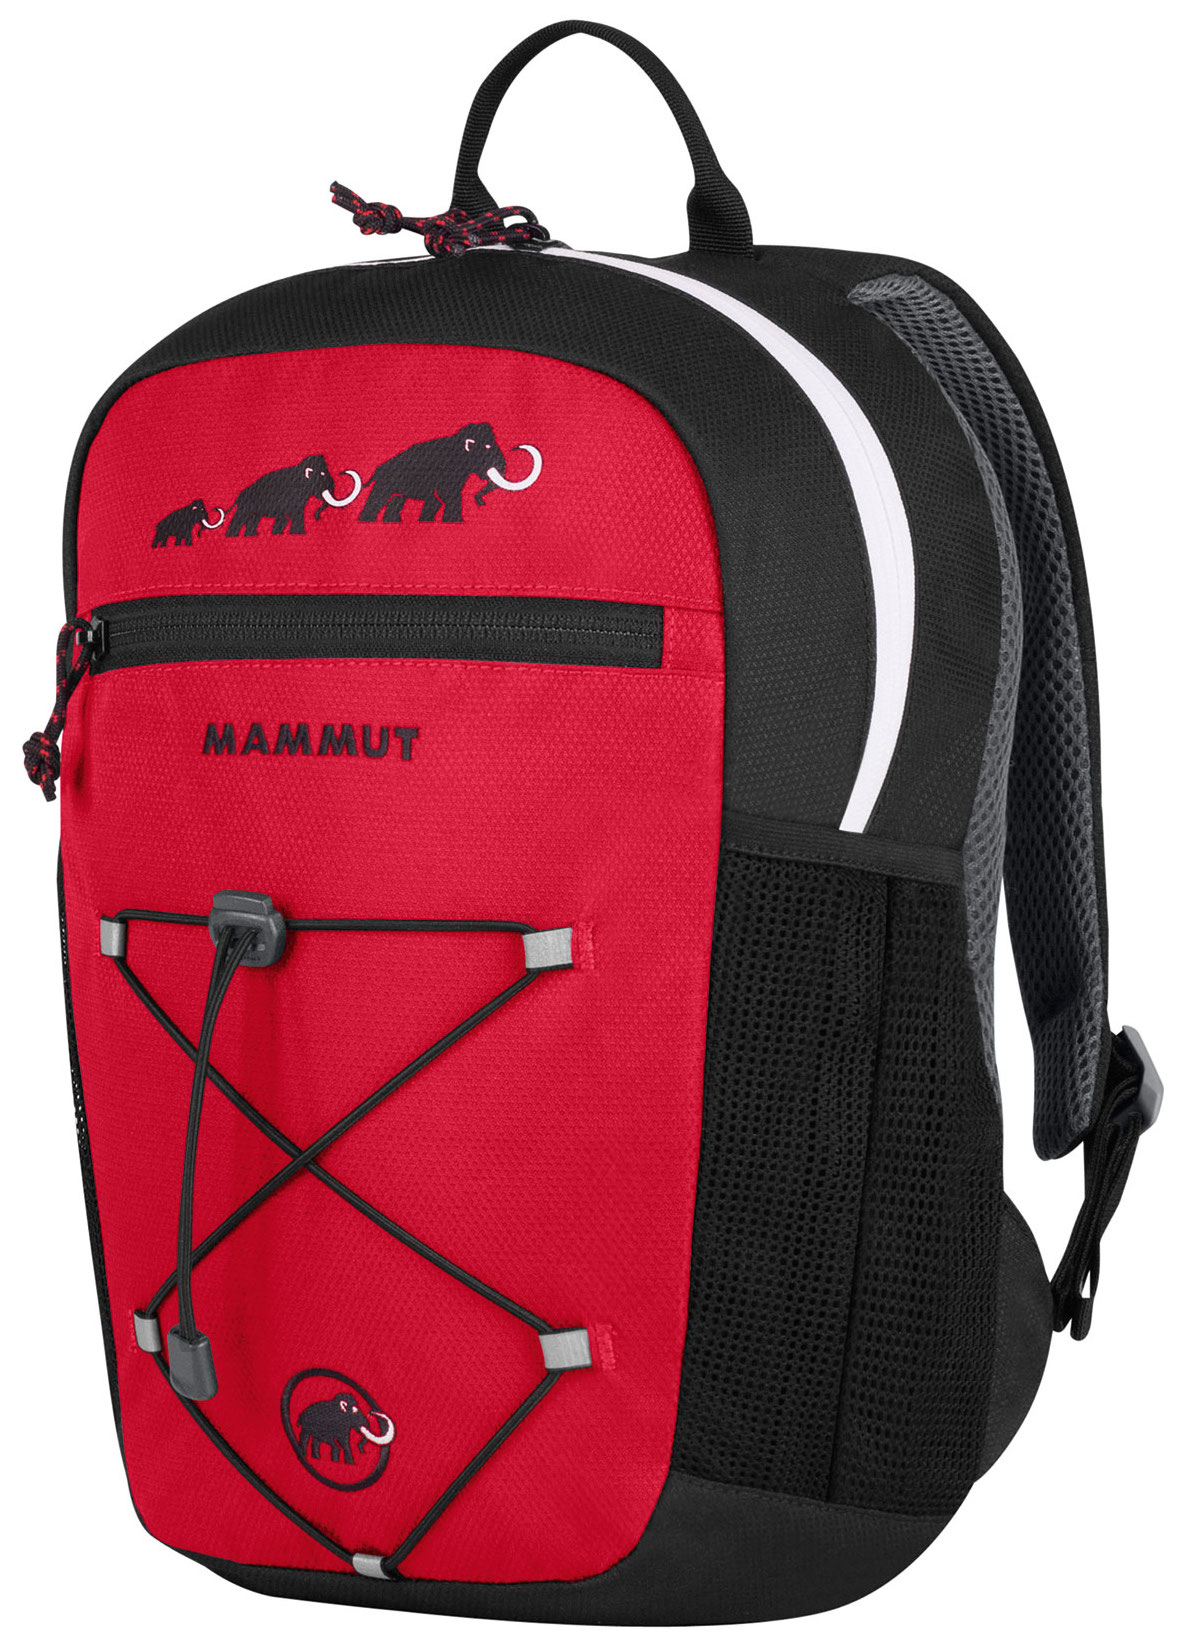 Mammut - First Zip - Backpack - Kids